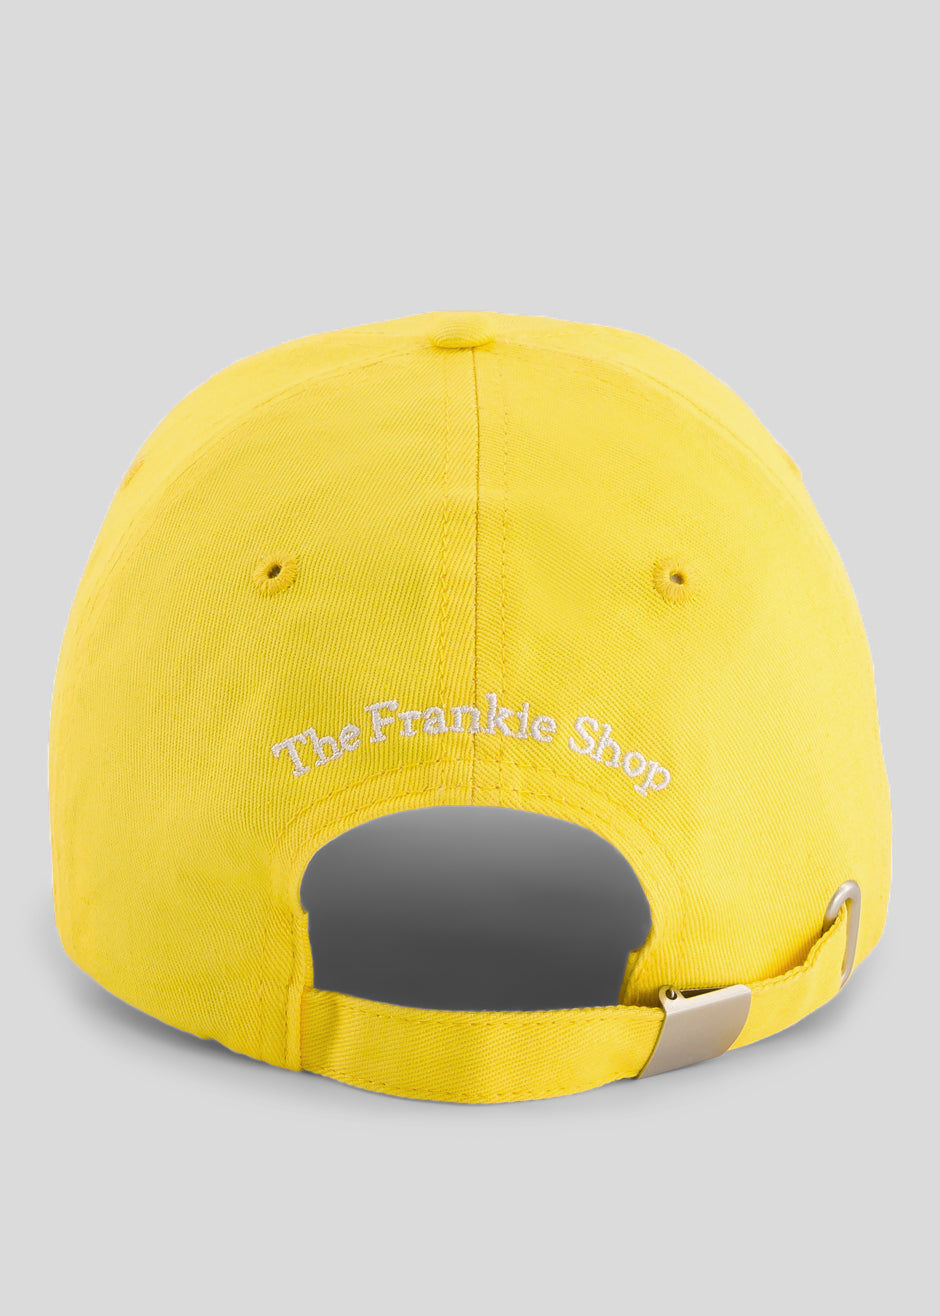 The Frankie Shop x Thomas Lélu Free Baseball Cap - Yellow - 3